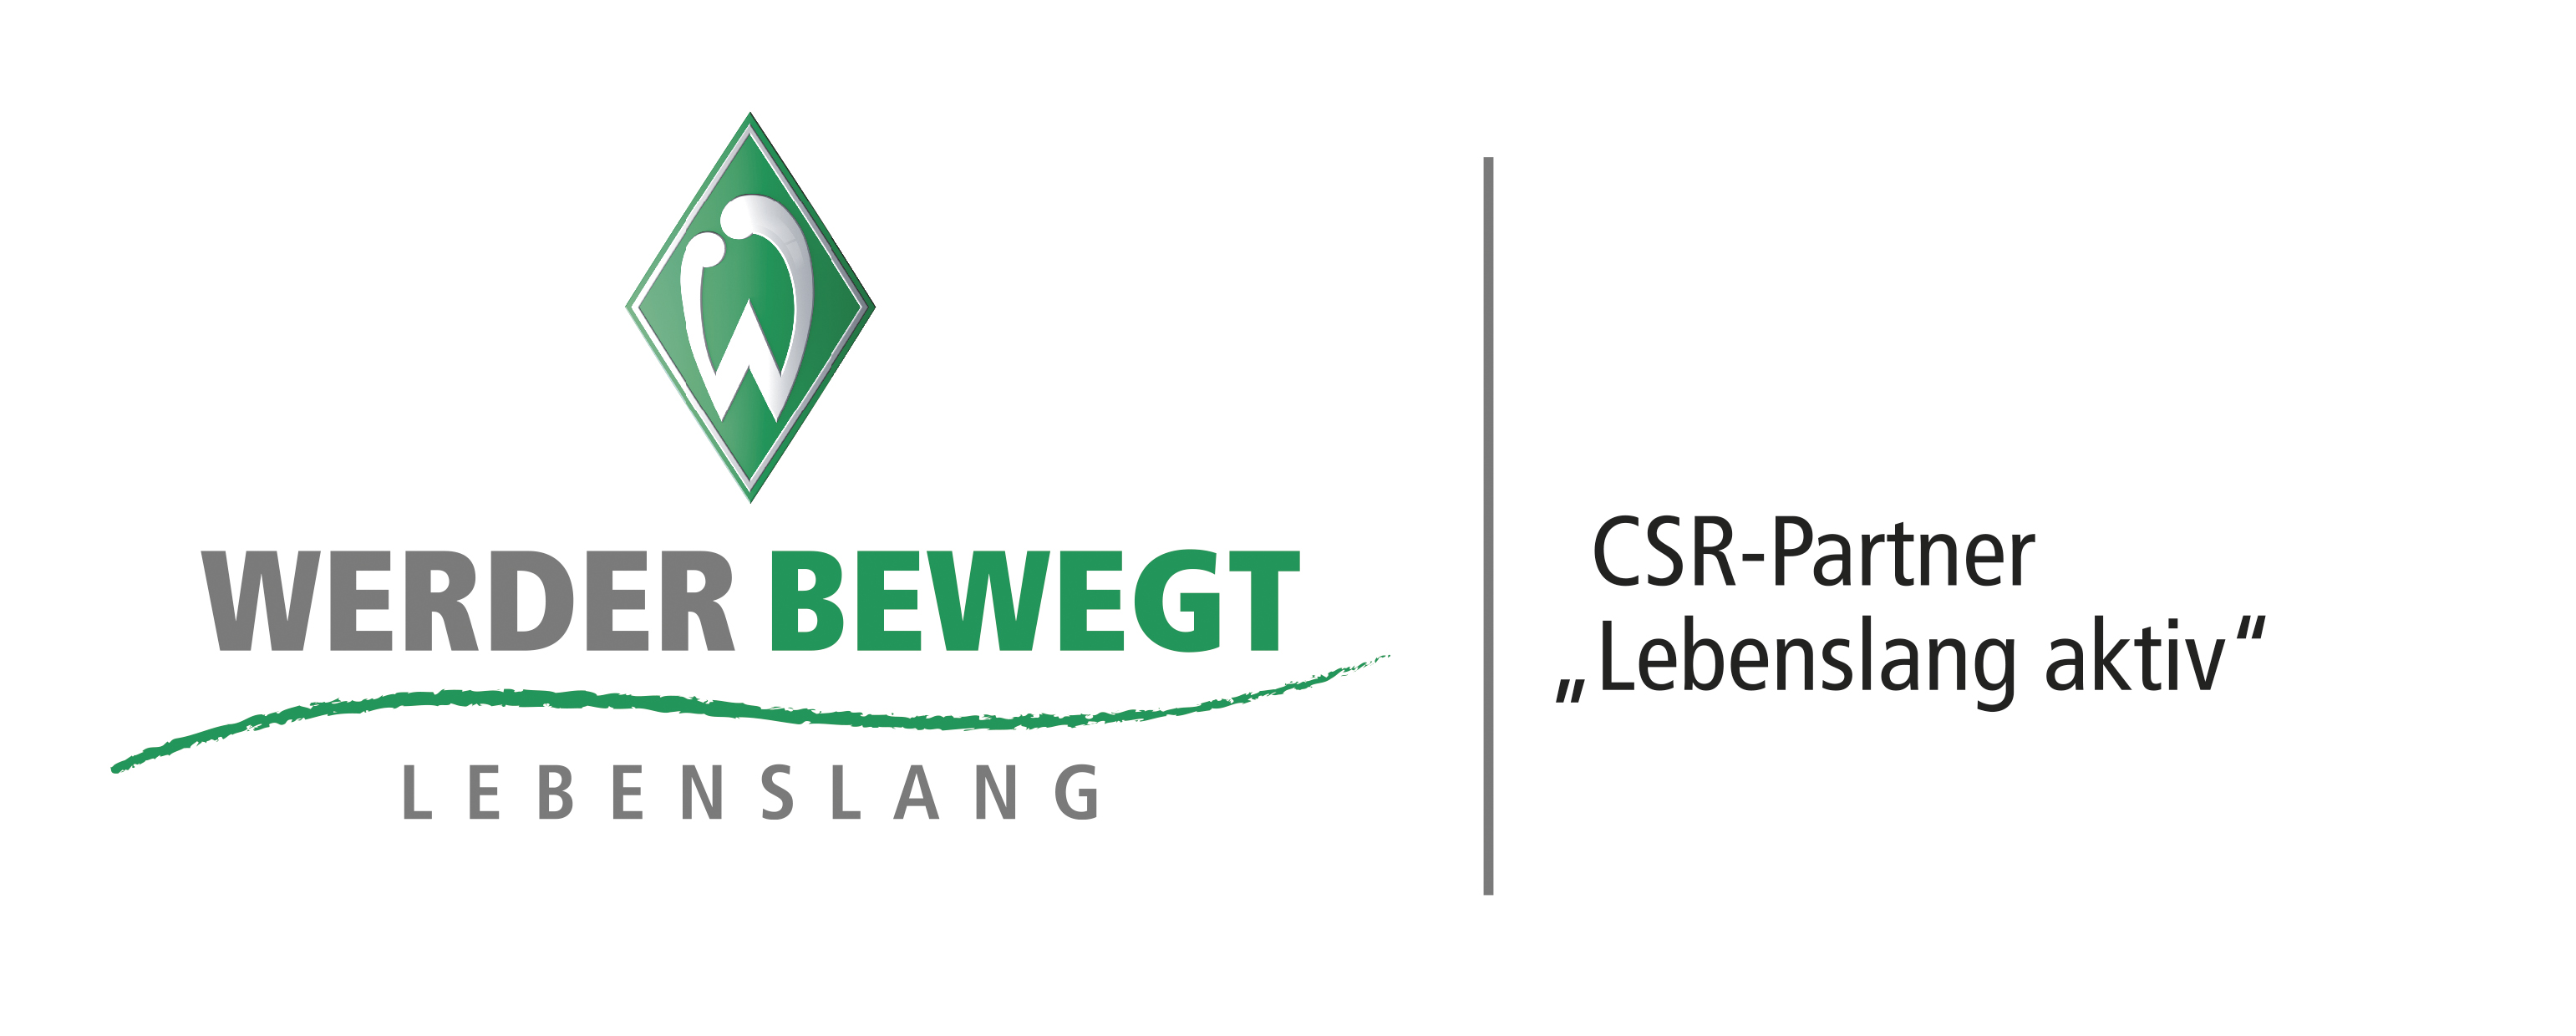 CSR-Partner_Lebenslang_aktiv_PFADE.indd